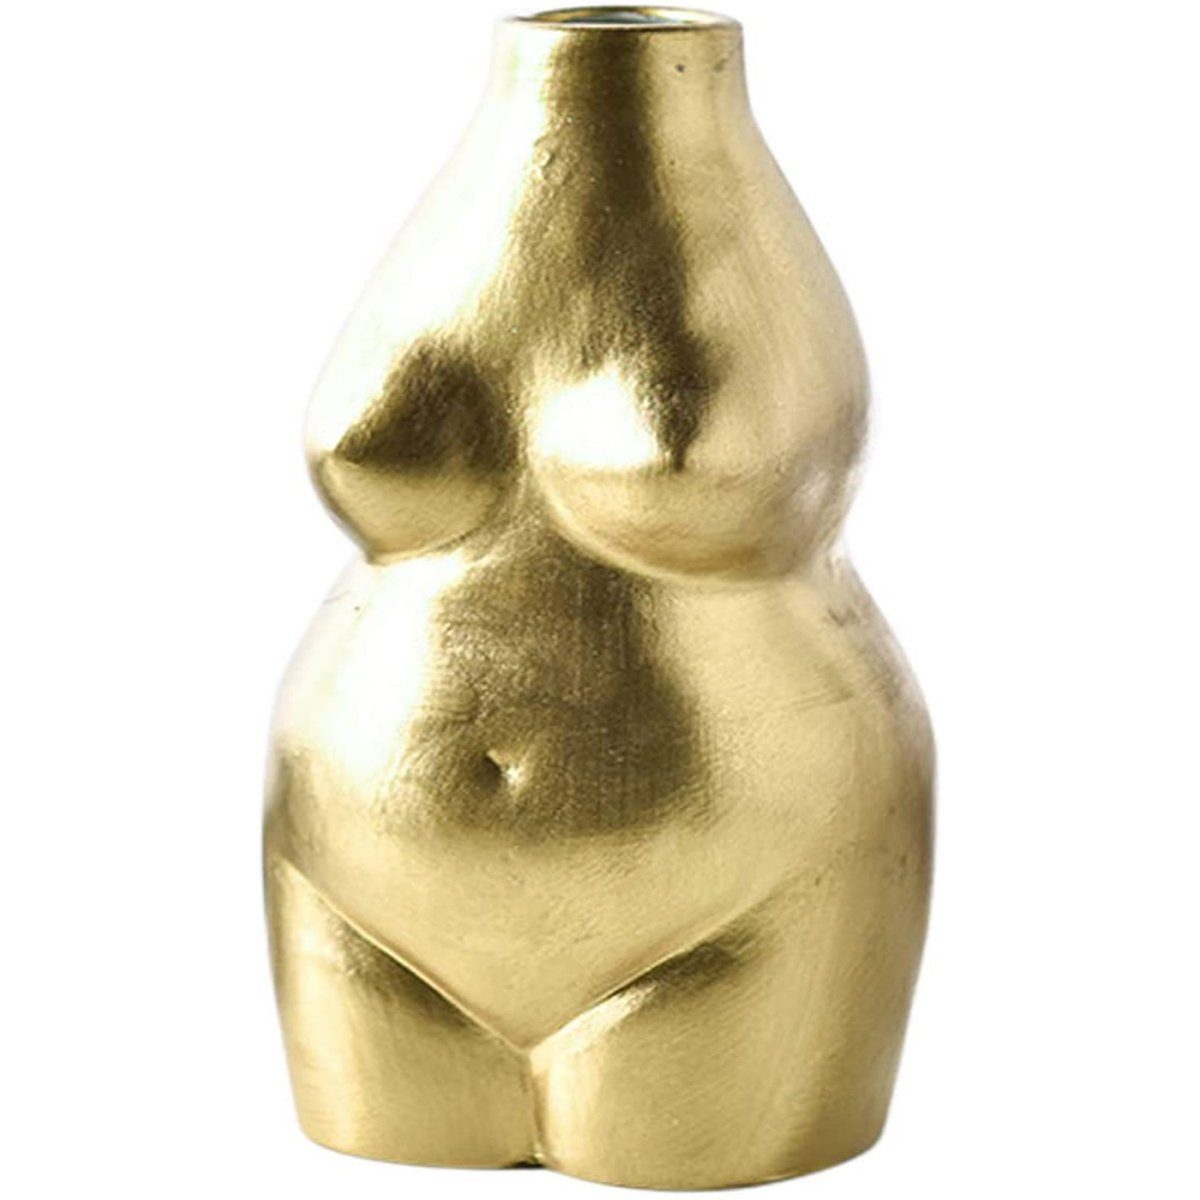 Jormftte Dekovase Weiblich Körper Vase Kunst Design,Keramik Blumentopf Statue,für Deko Gold